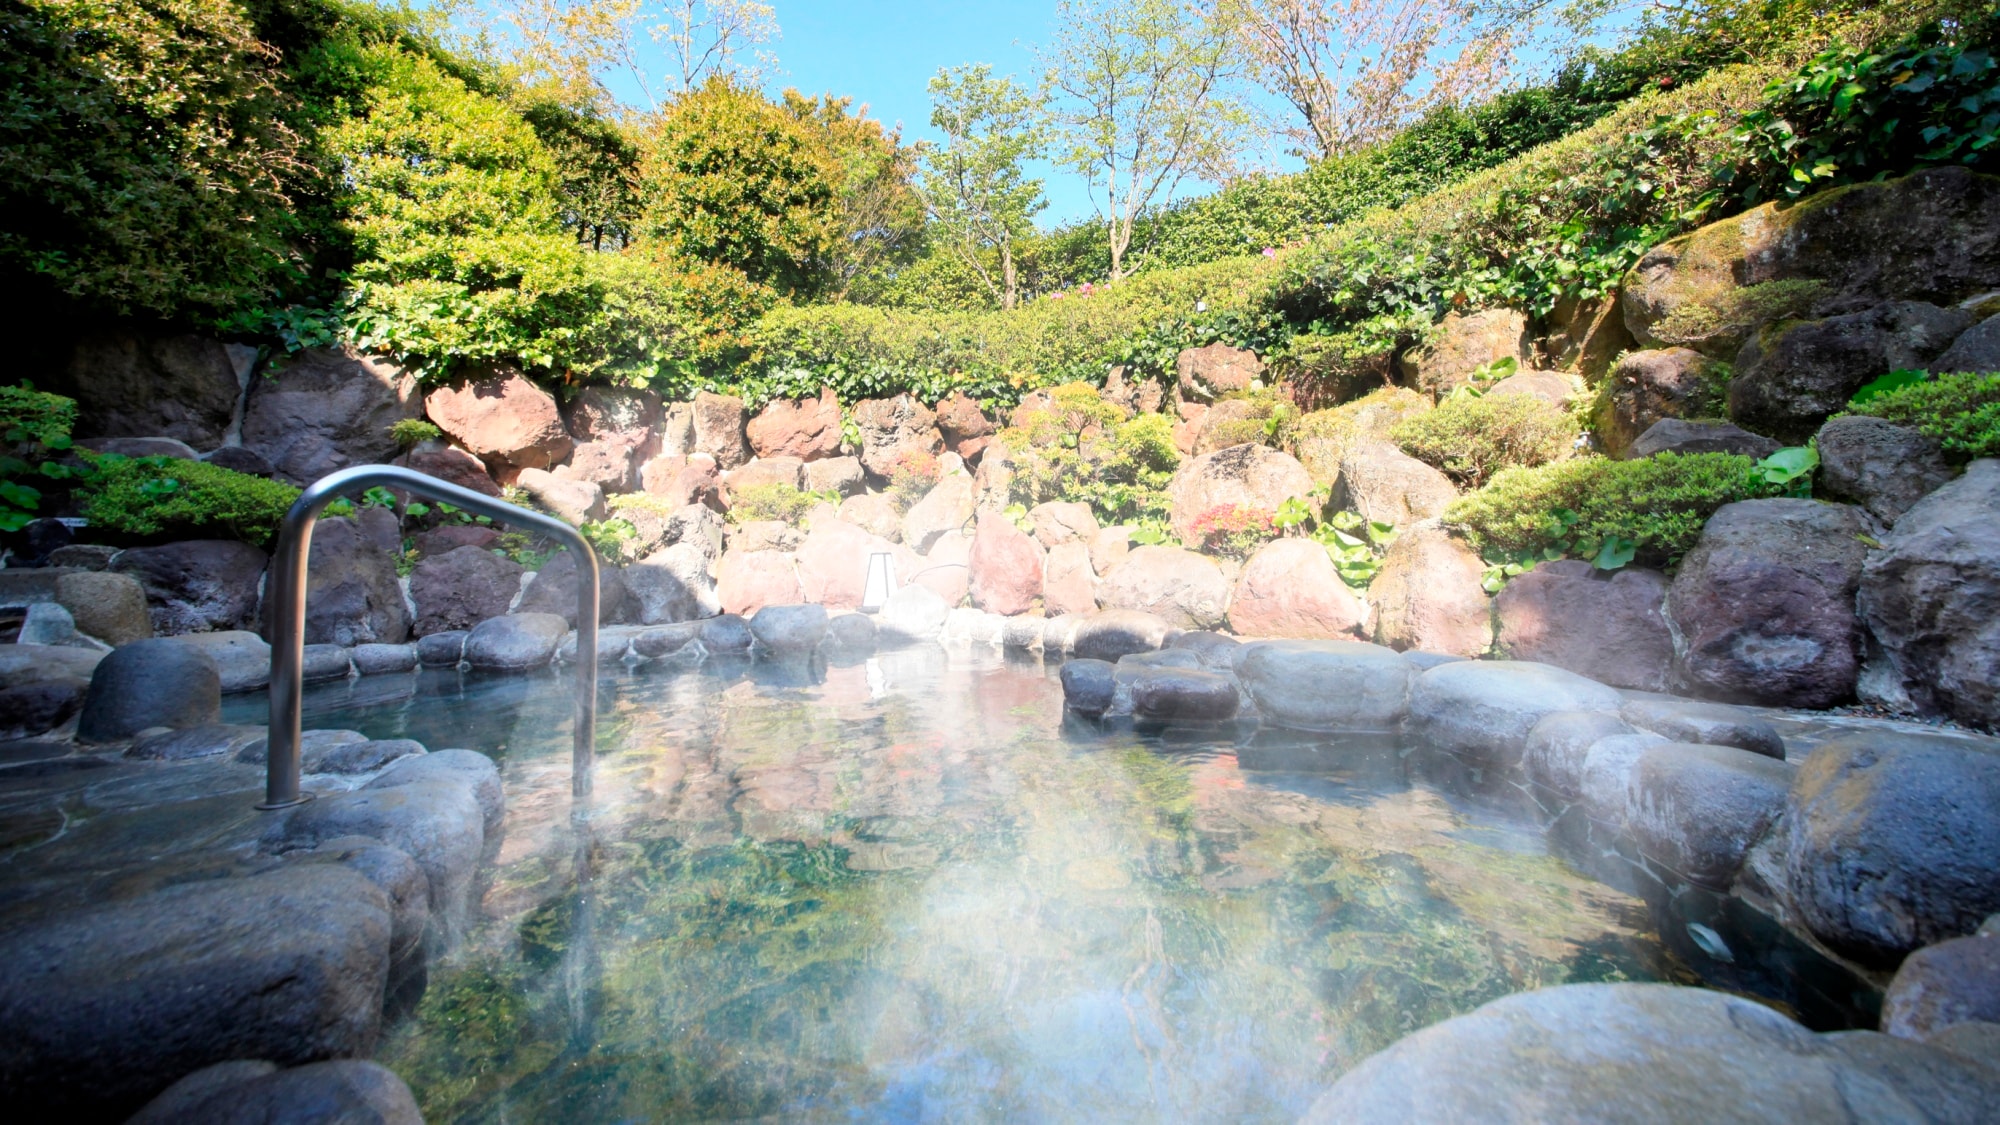 [Open-air bath] Open-air bath where the natural breeze feels good